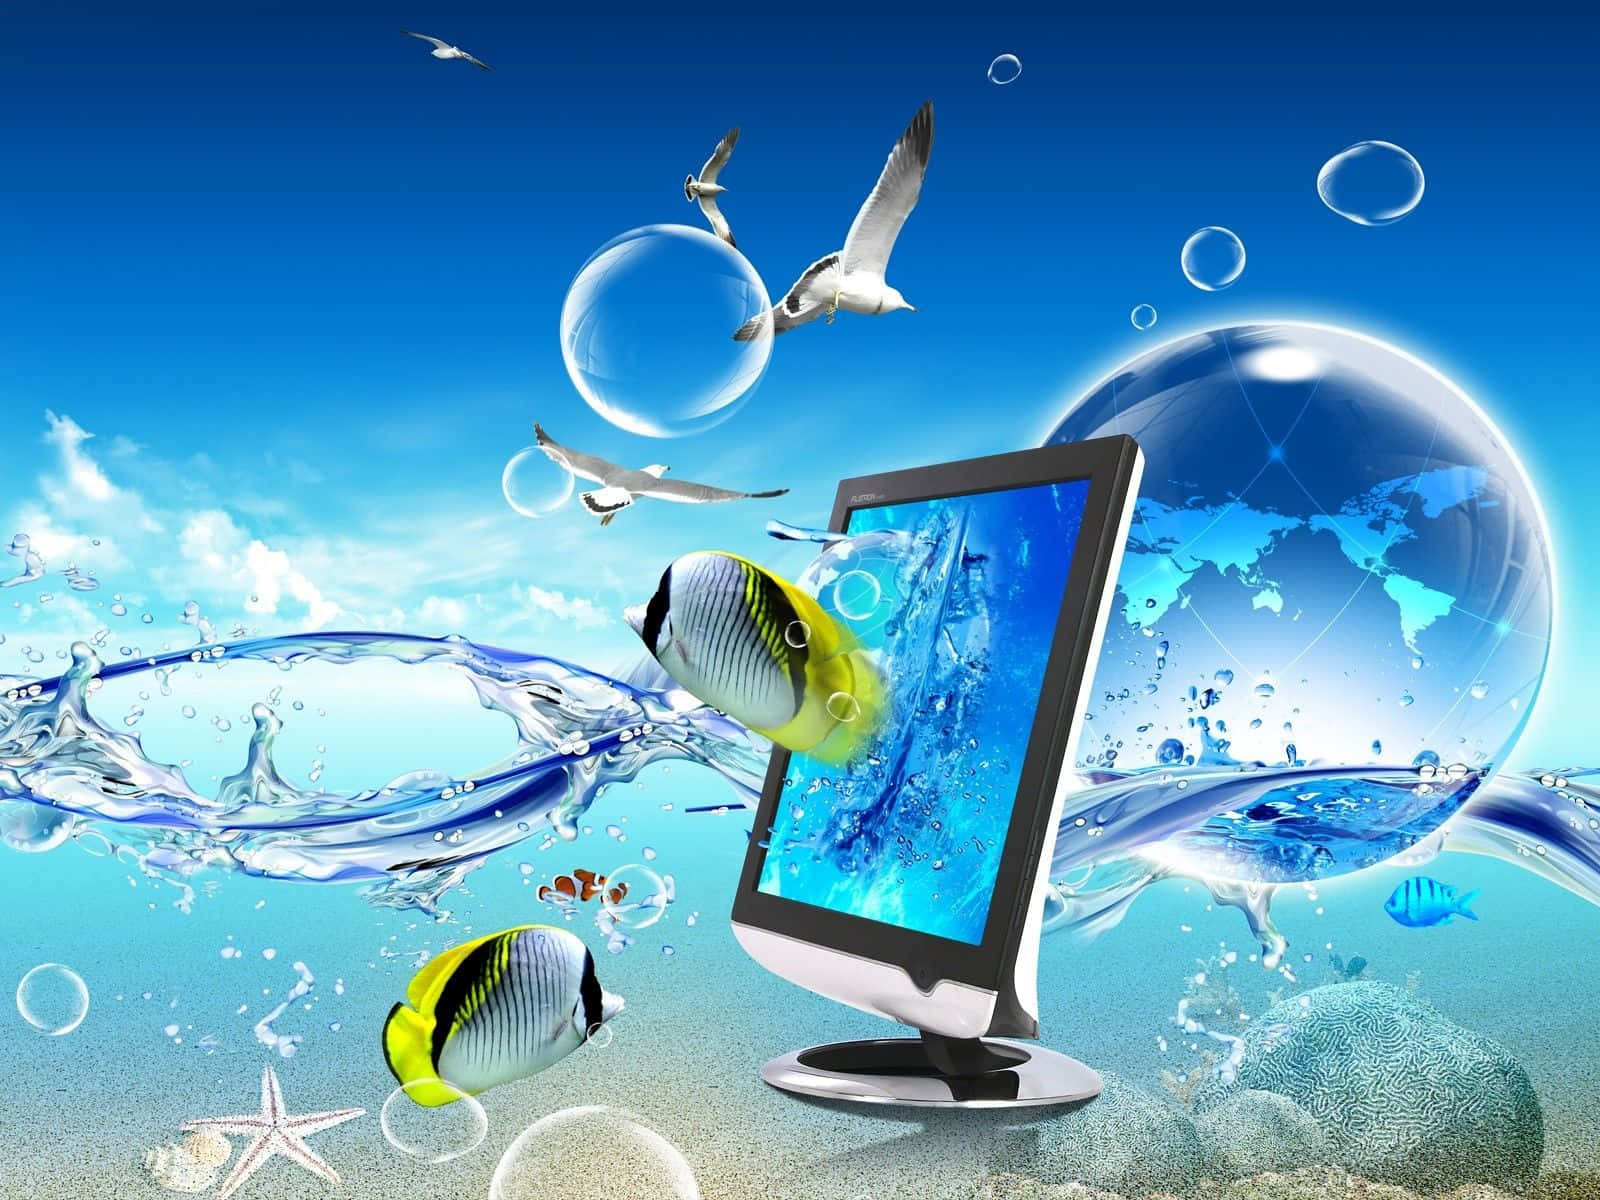 Bestehintergrundbilder Für Den Desktop-pc Mit Fischen Und Computergrafiken Von Wasser.